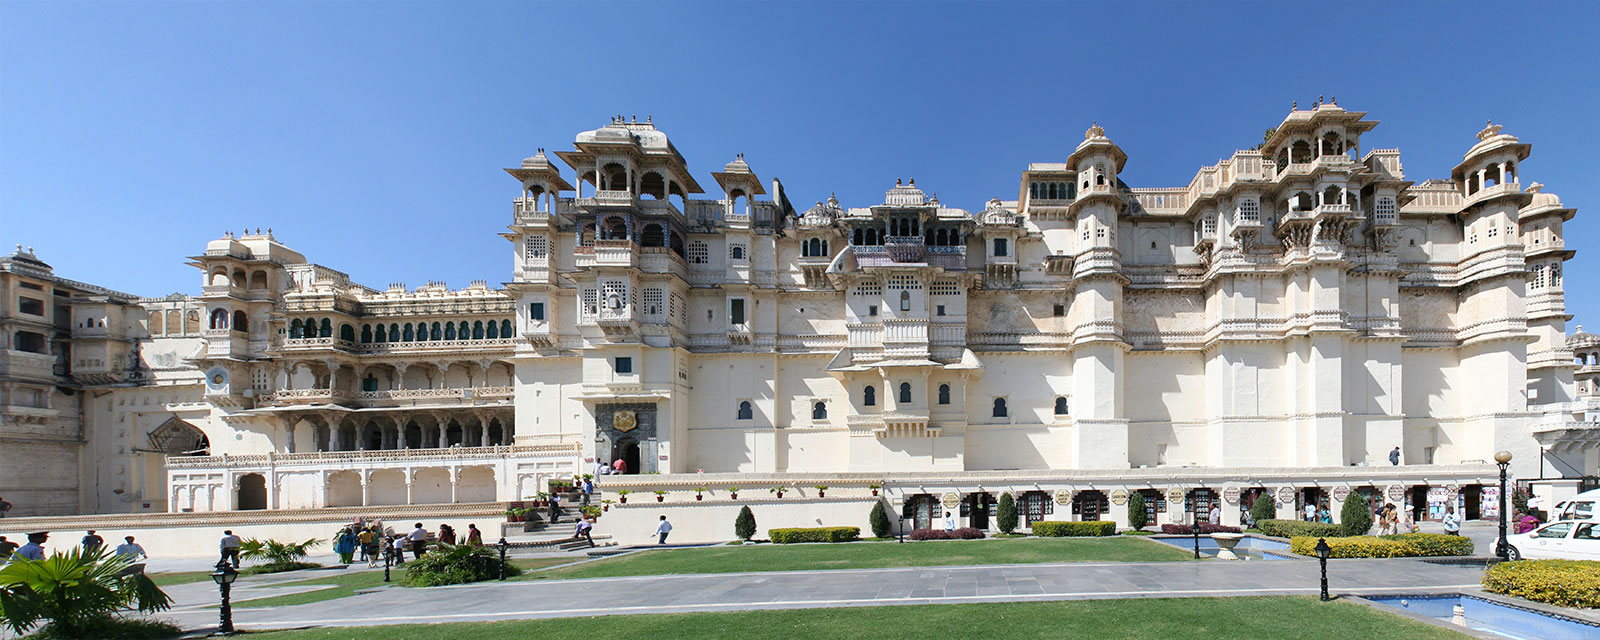 Hotel Association Udaipur